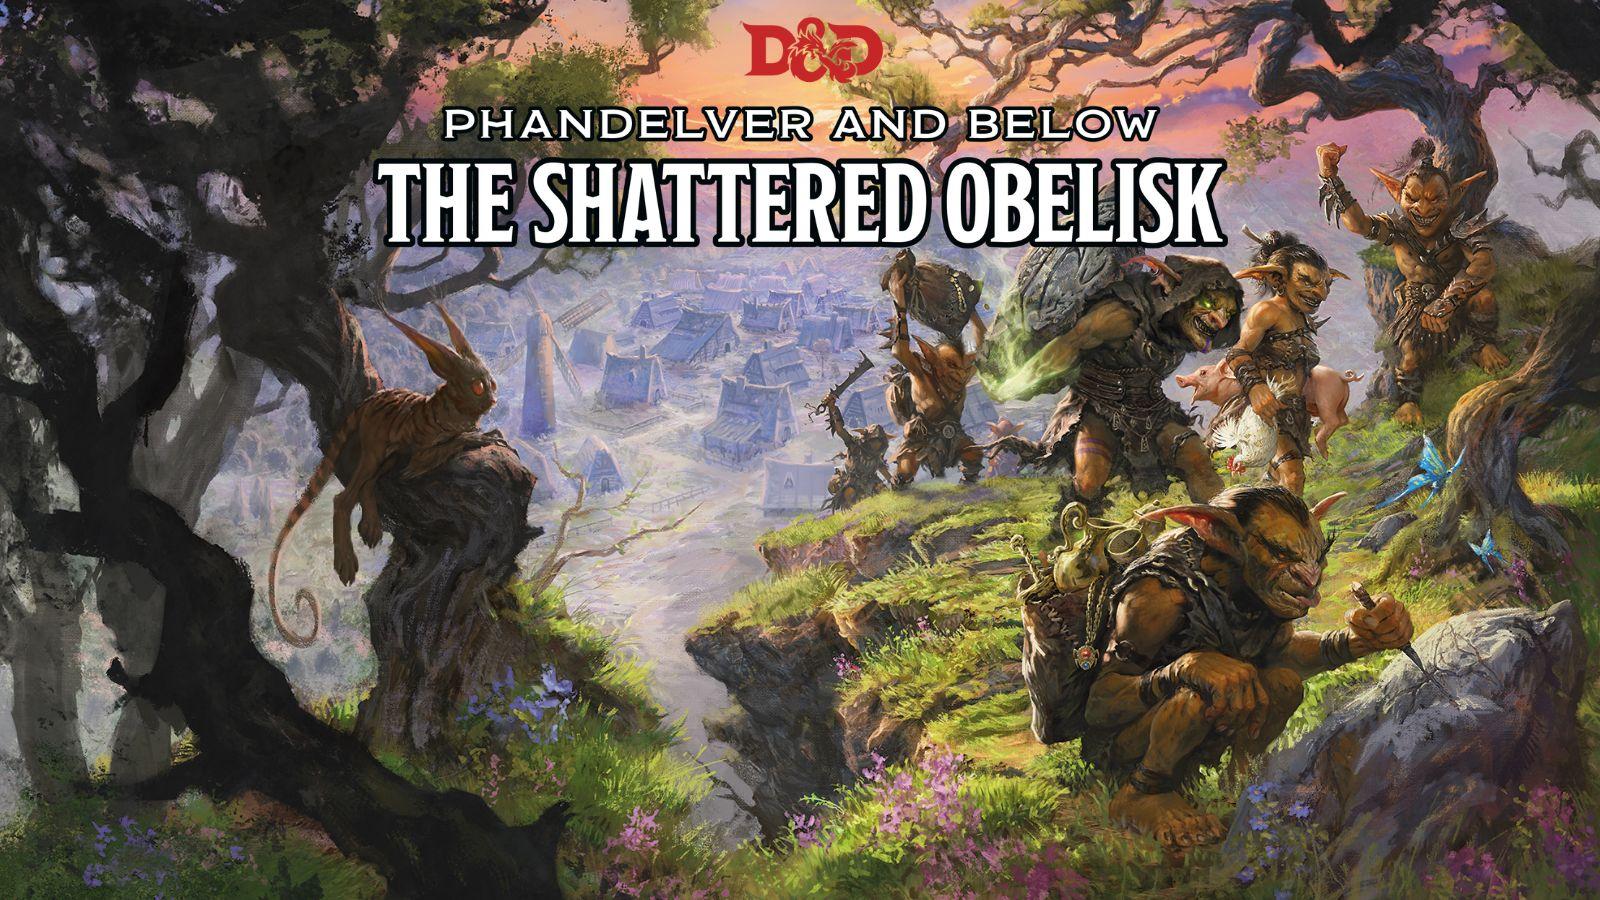 Dungeons & Dragons The Shattered Obelisk